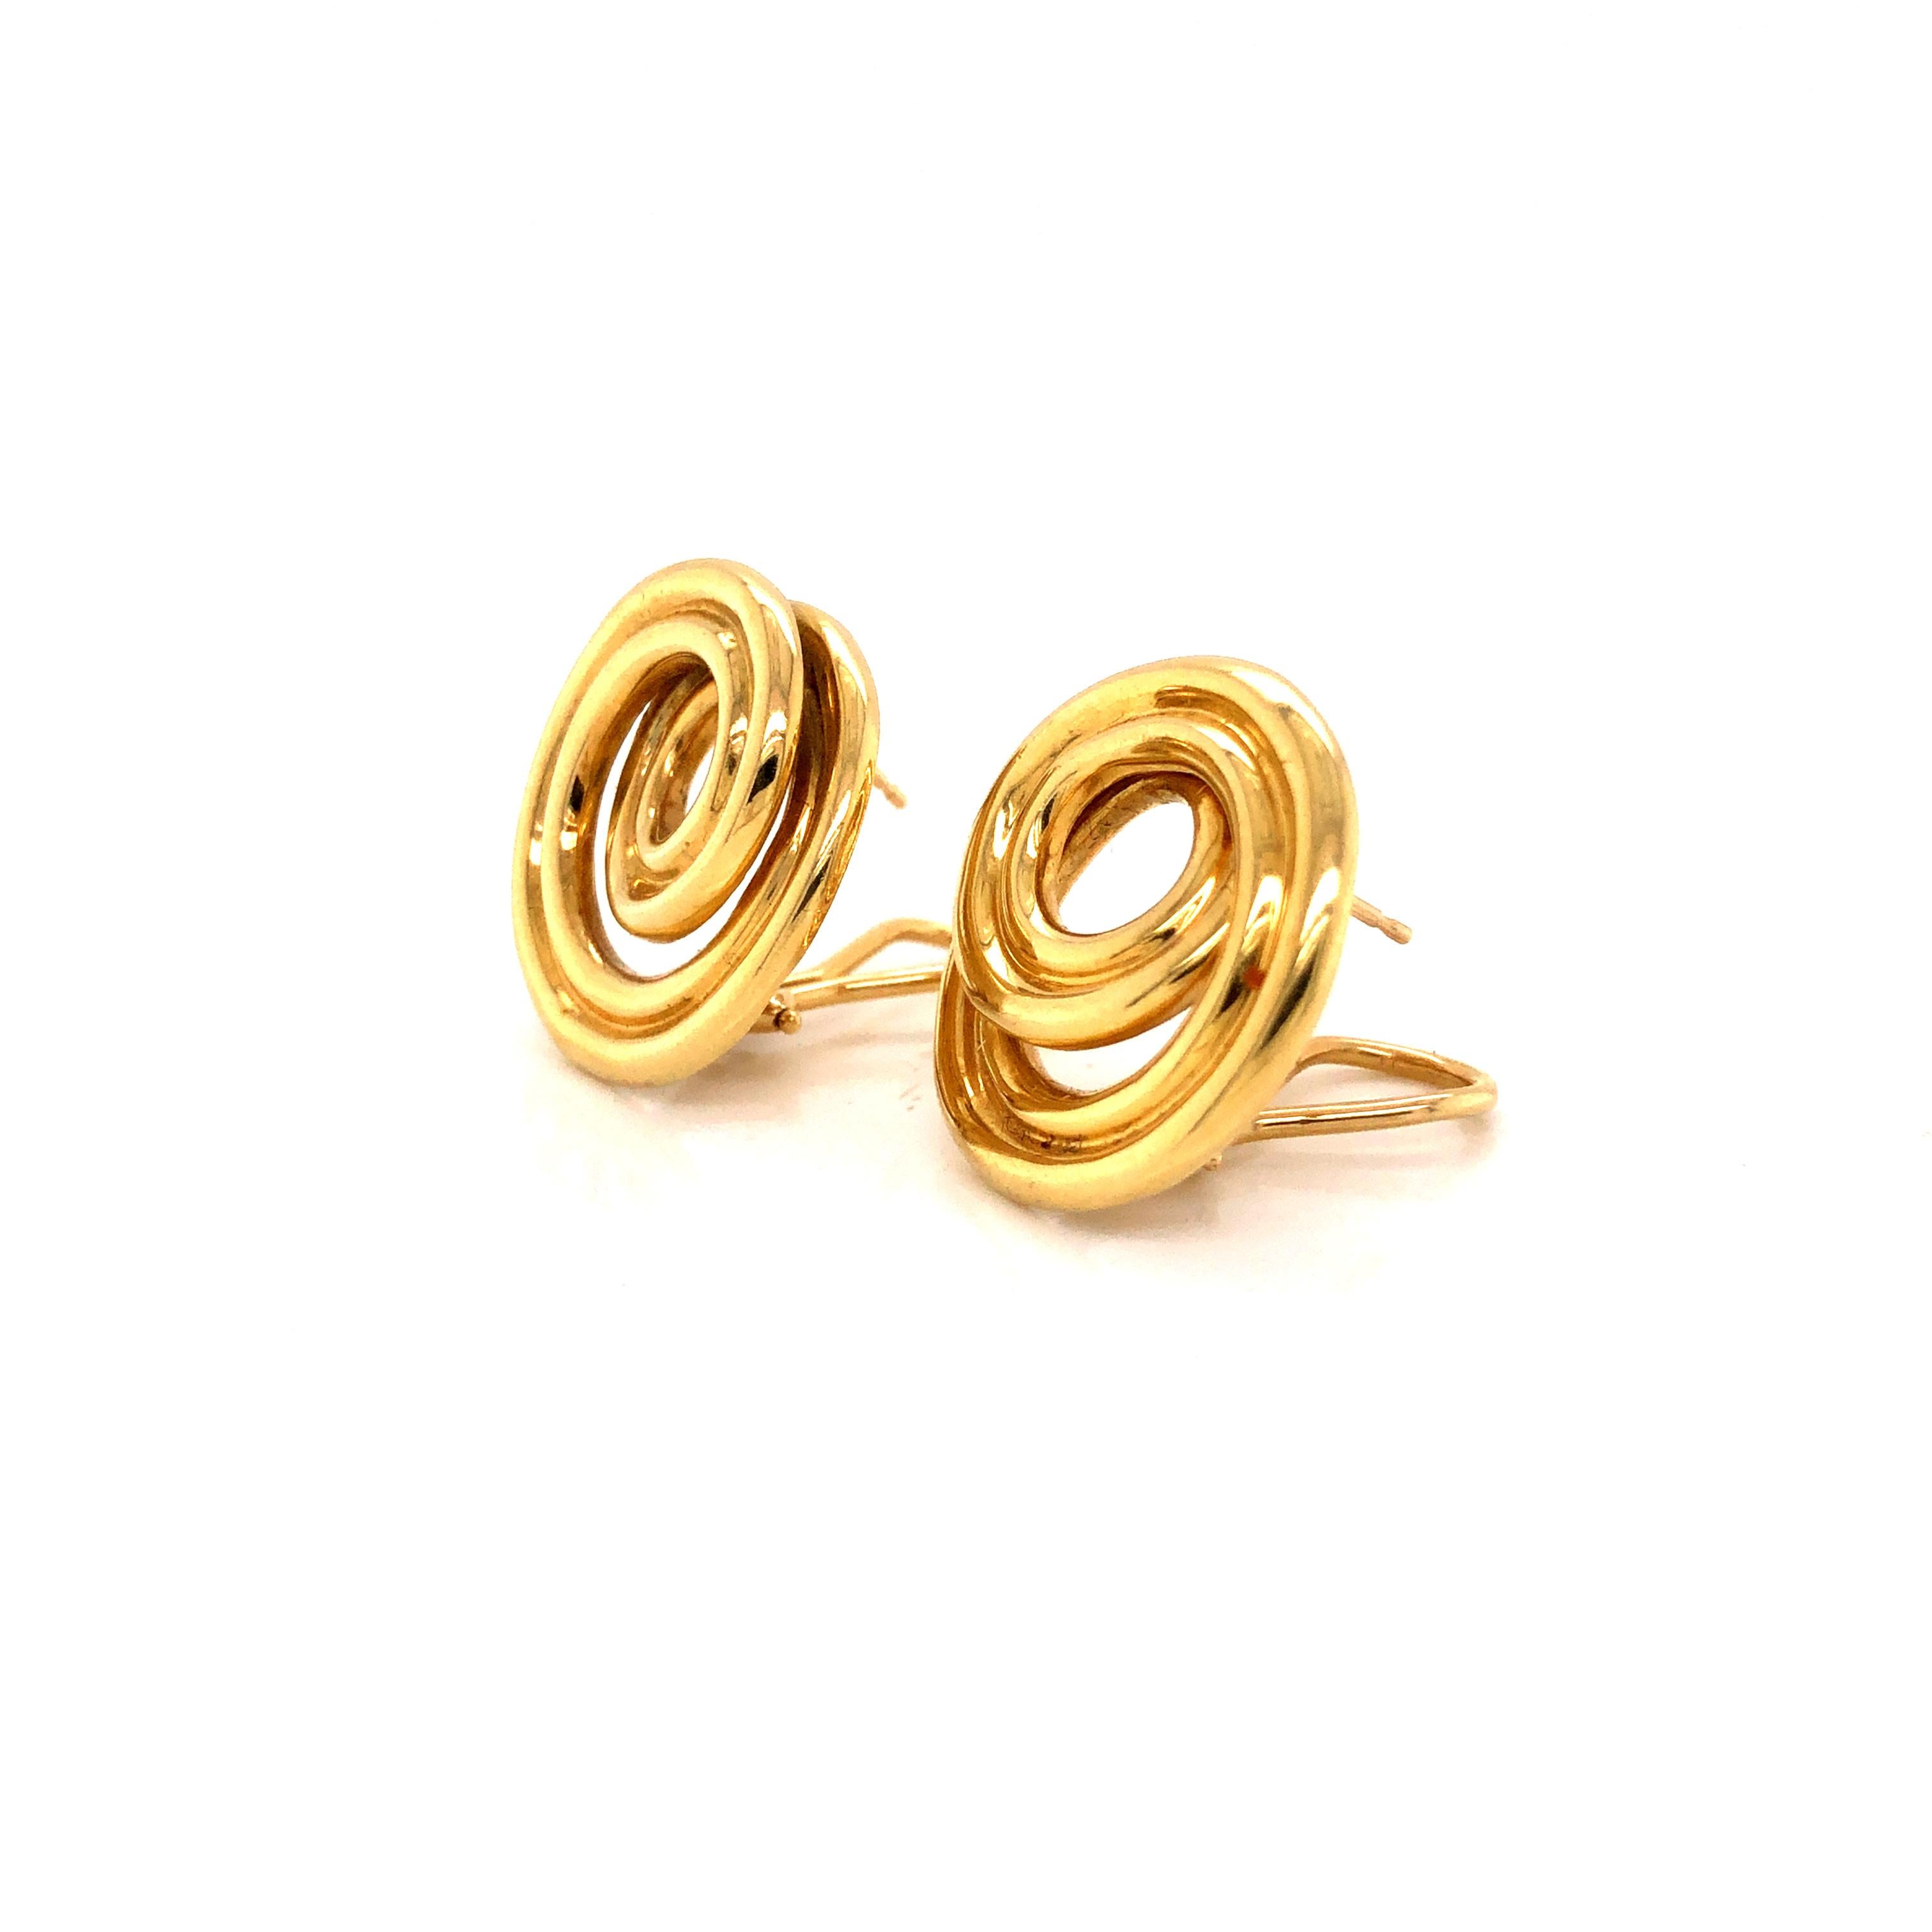 Wunderschöne Ohrringe vom berühmten Schmuckhaus Tiffany & Co. Diese Retro-Ohrringe sind aus 18 Karat Gelbgold gefertigt.  Das Paar zeigt ein brillantes, wirbelndes Muster in einem kreisförmigen Design.  Das Paar hat ein 3-D-Gefühl, da sich die